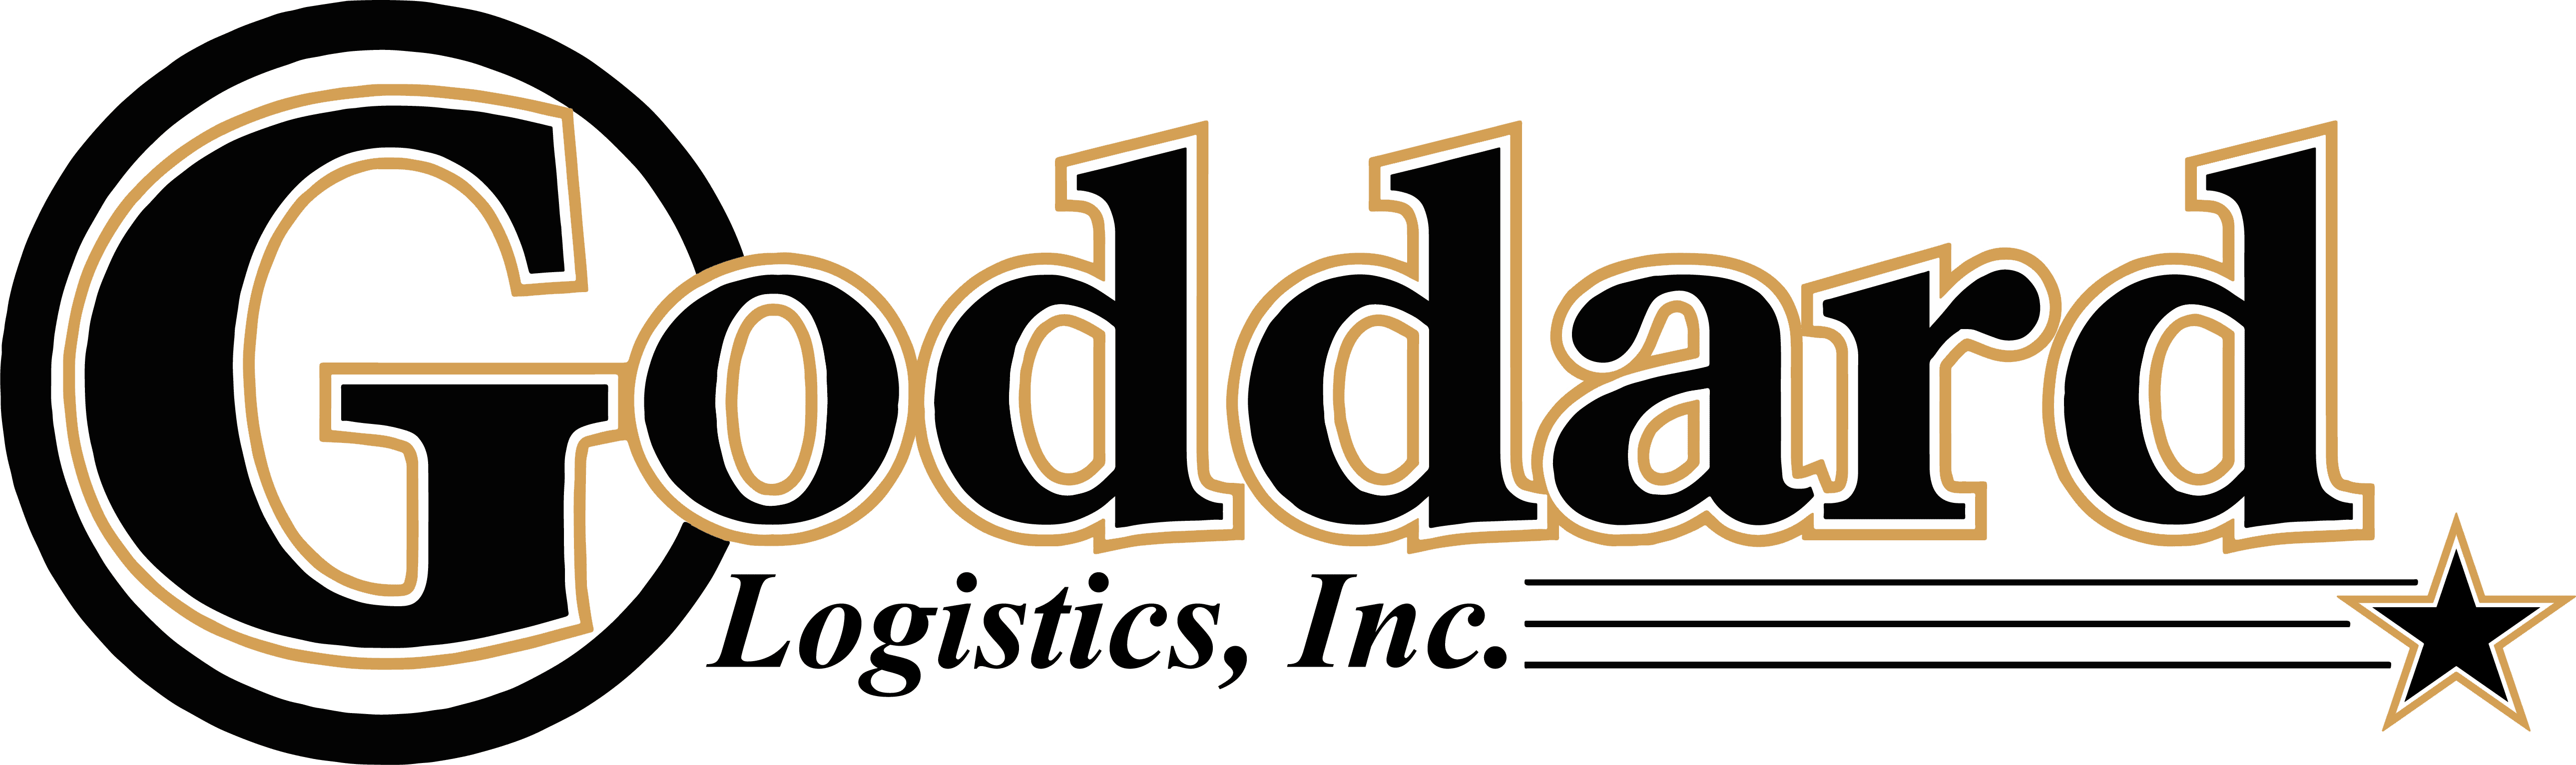 Goddard Logistics